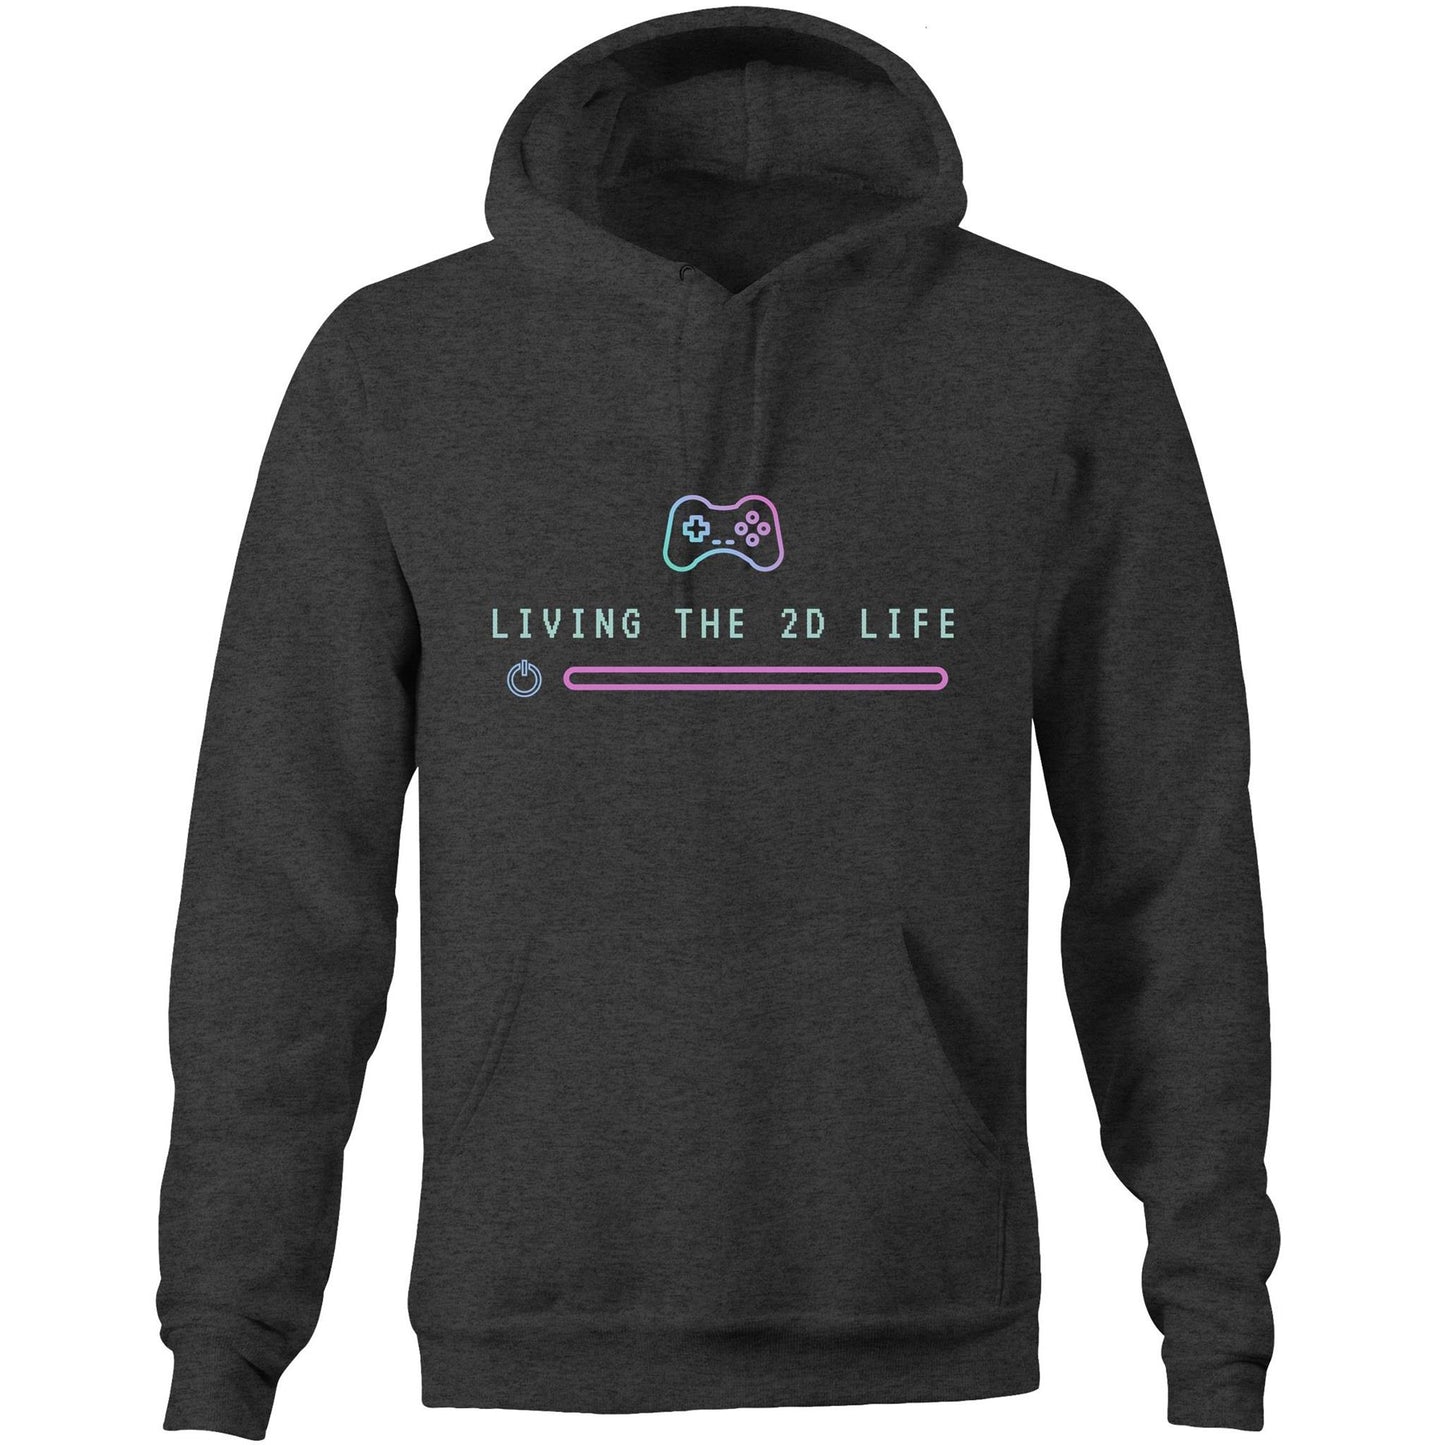 Living The 2D Life - Pocket Hoodie Sweatshirt Asphalt Marle Hoodie Games Tech